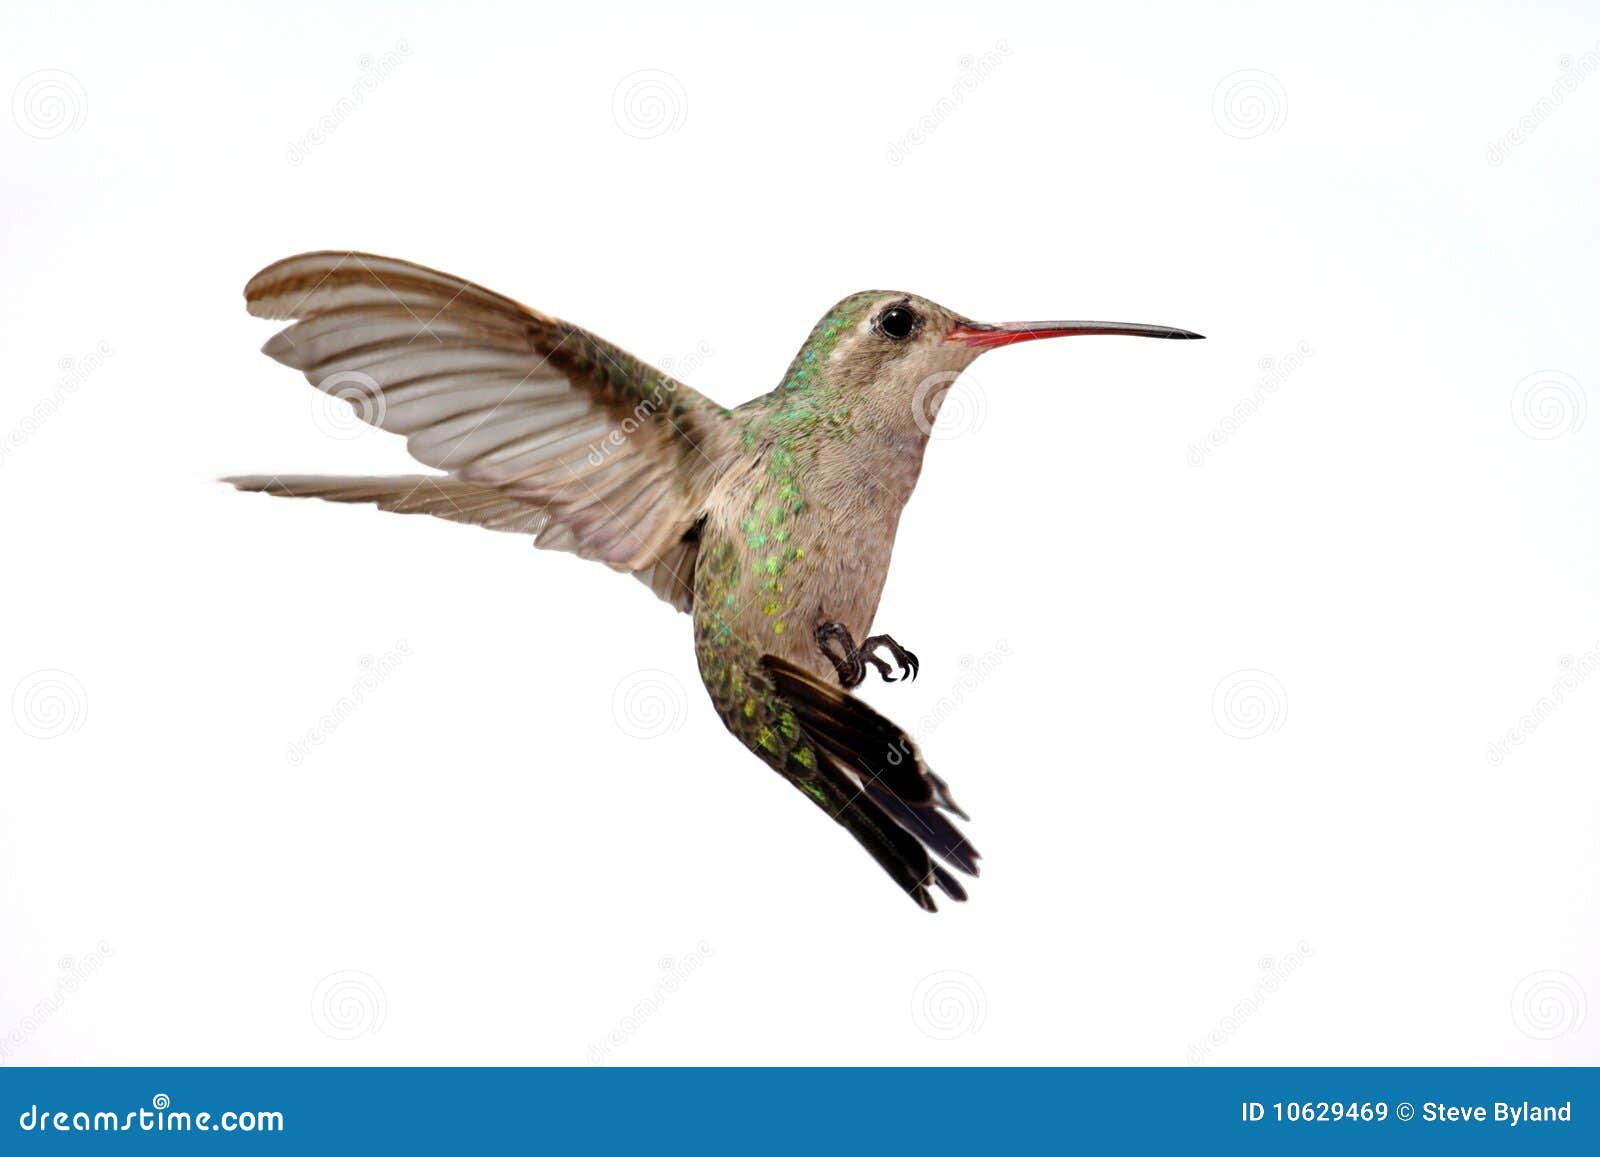  broad-billed hummingbird